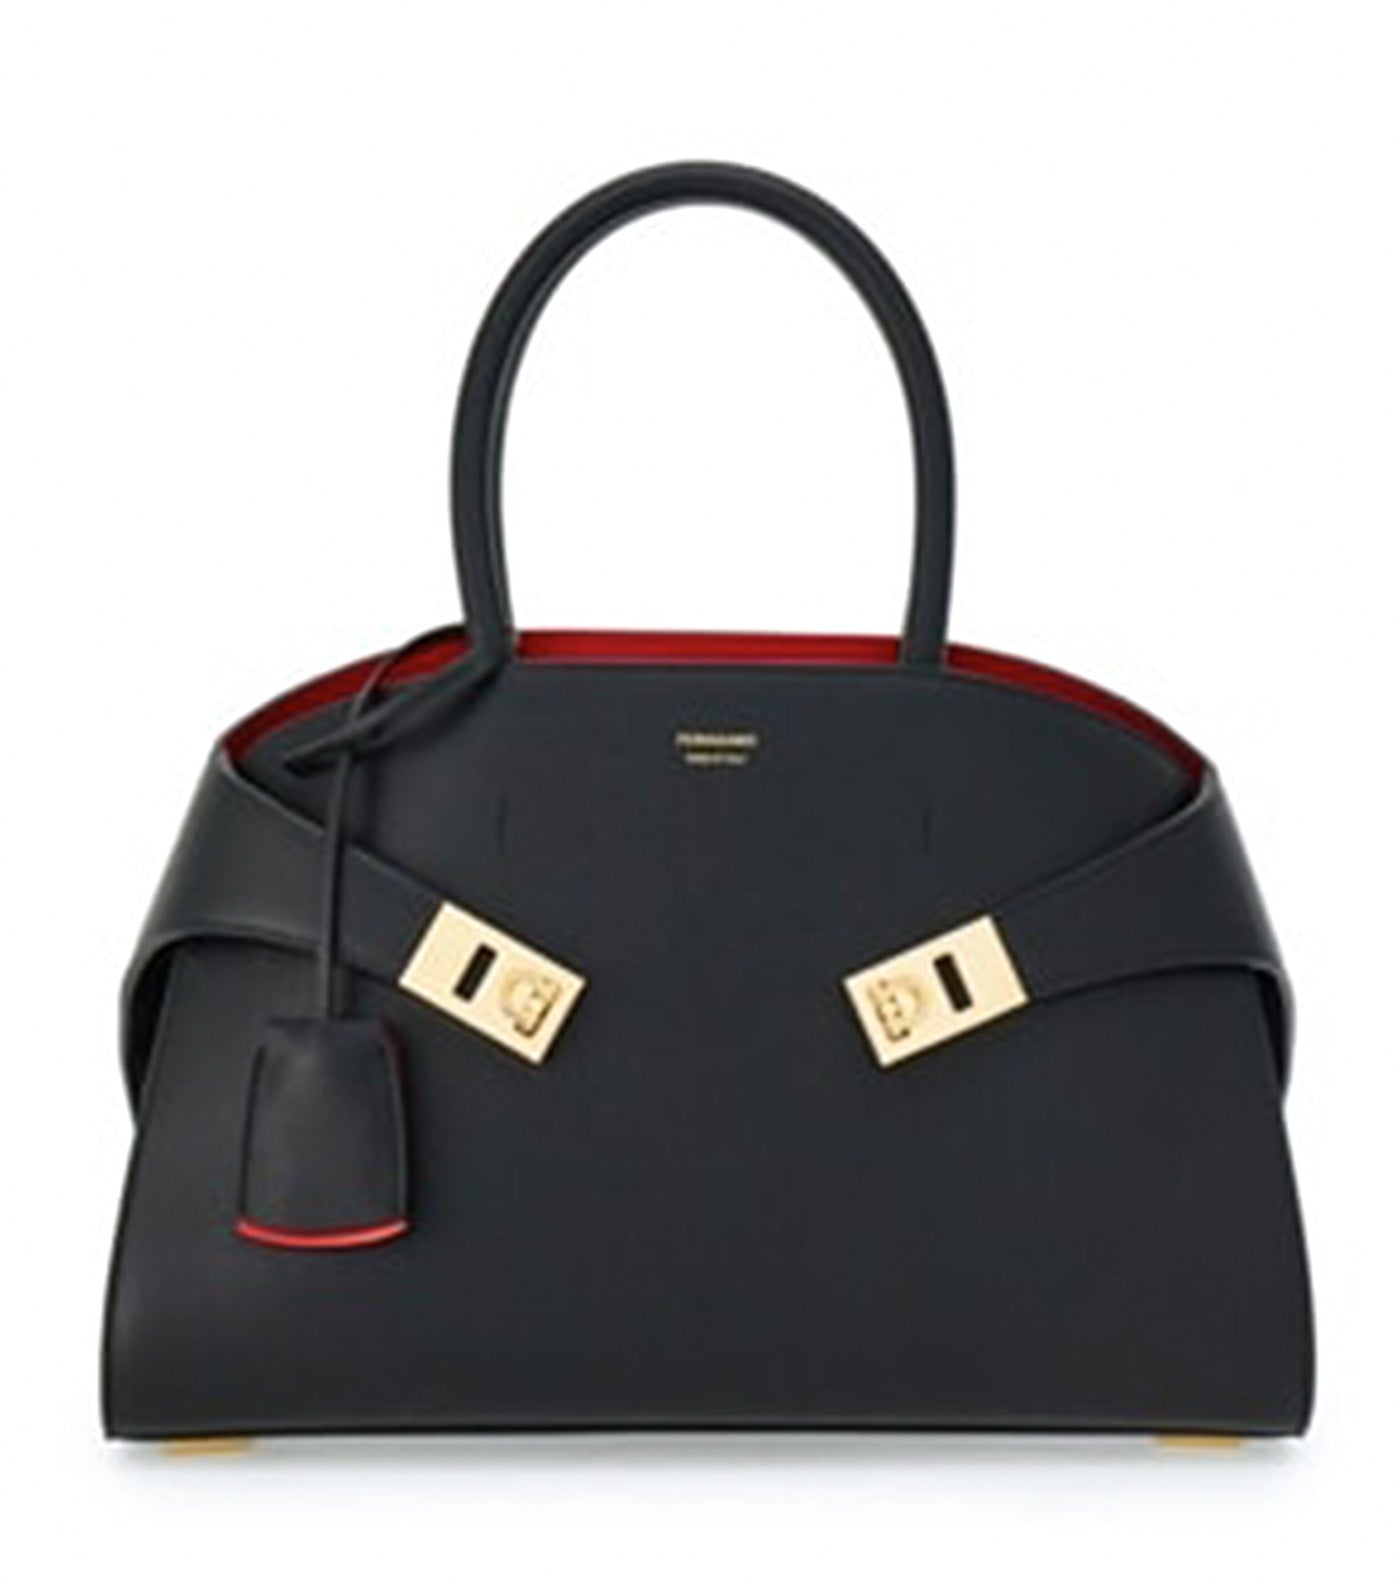 Hug Handbag S Black/Flame Red